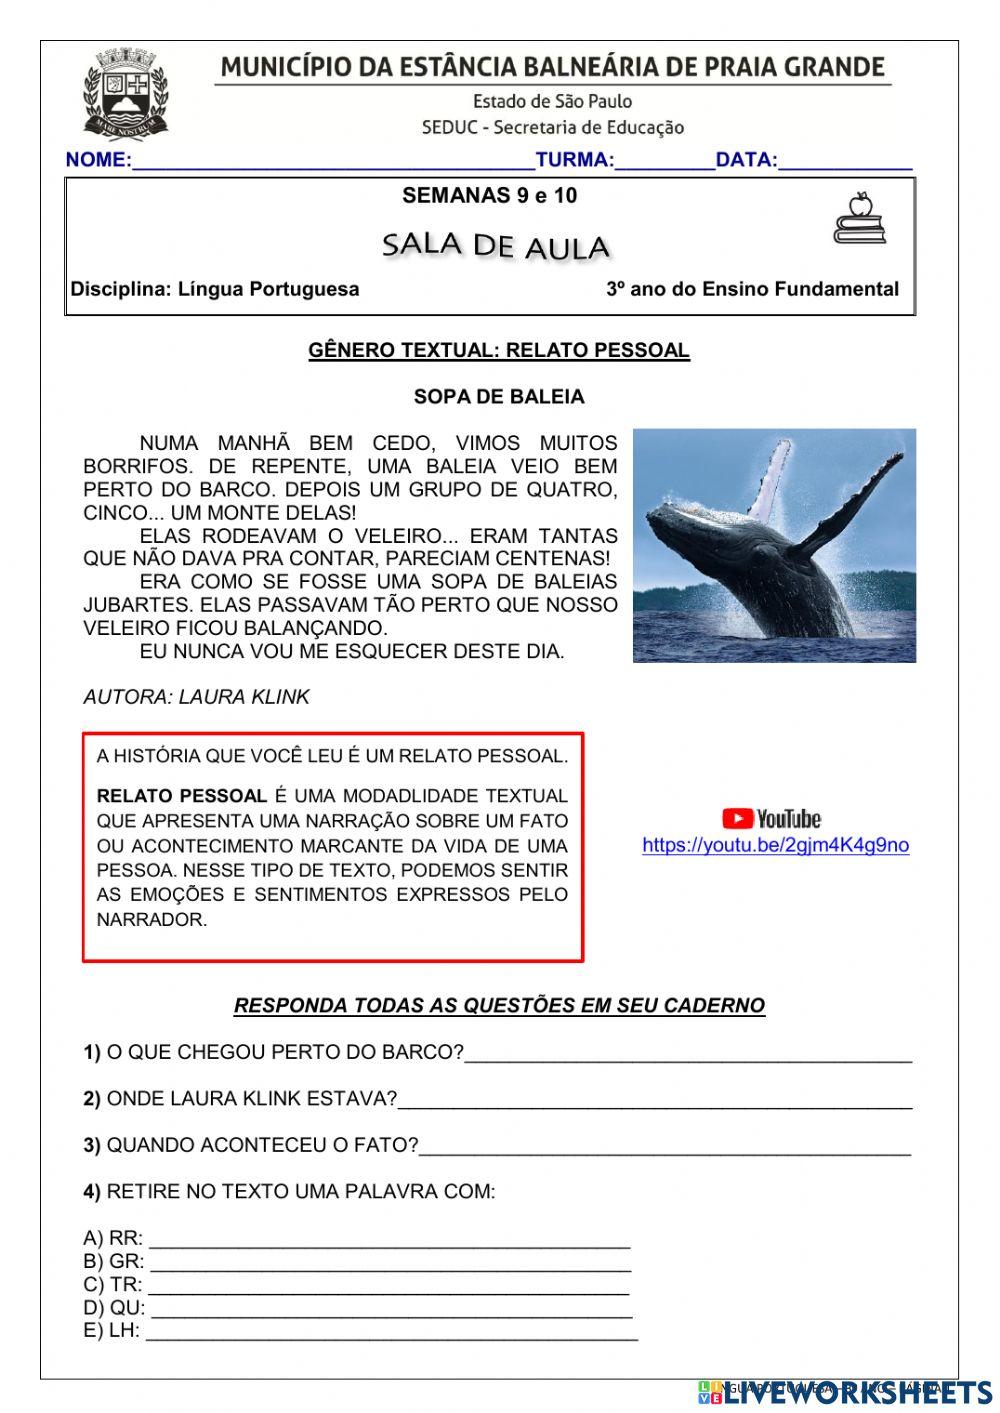 Download Historia da Lingua Portuguesa PDF